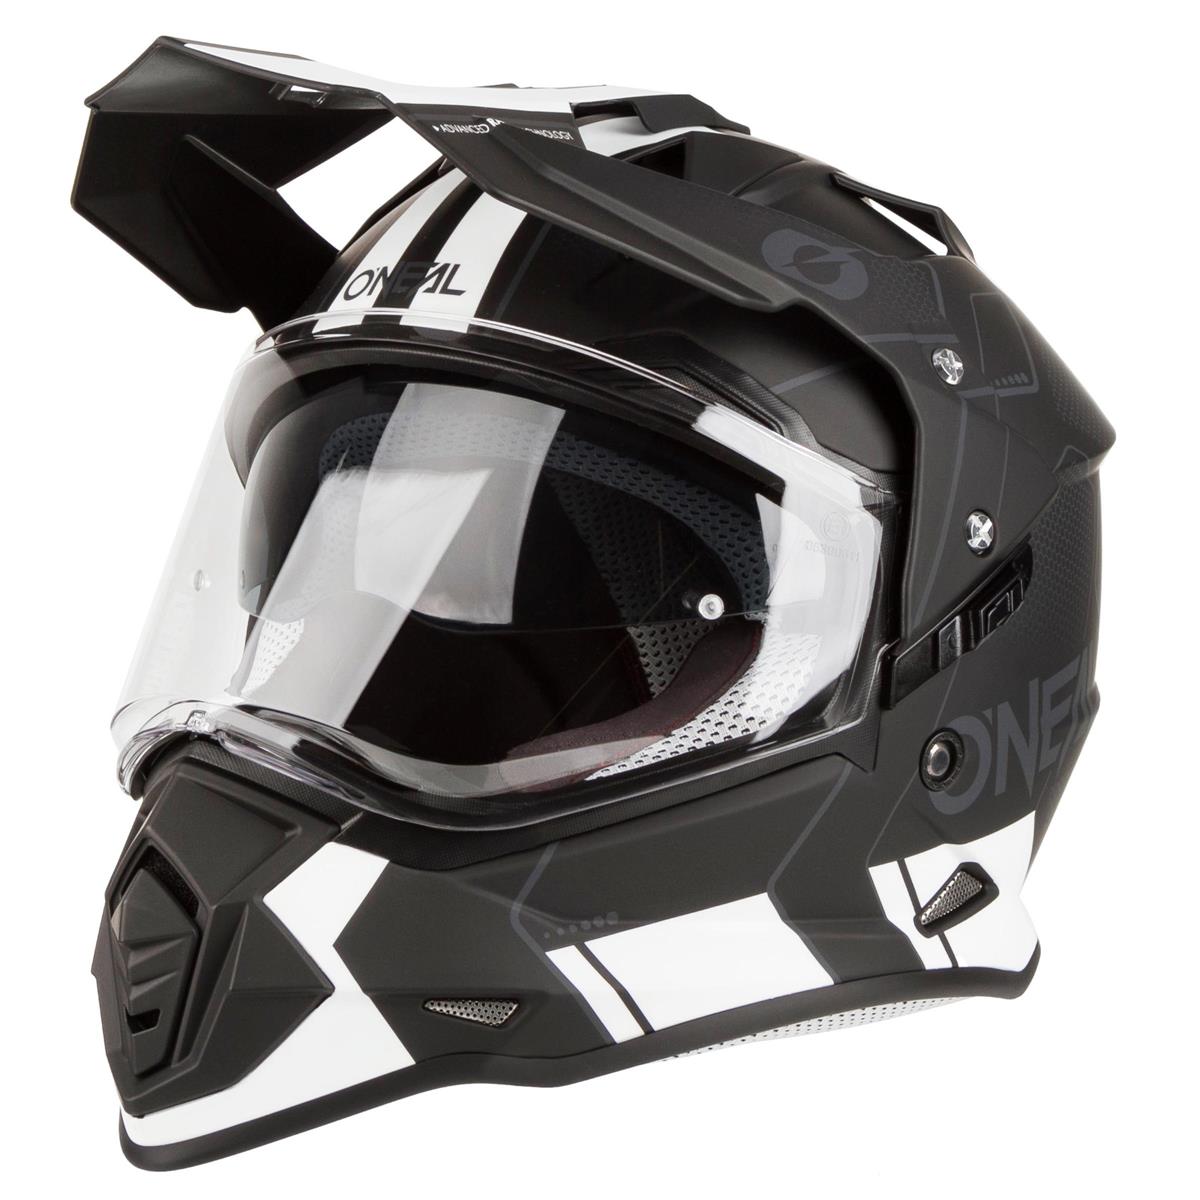 O'Neal Motocross-Helm Sierra II Comb Schwarz/Weiß